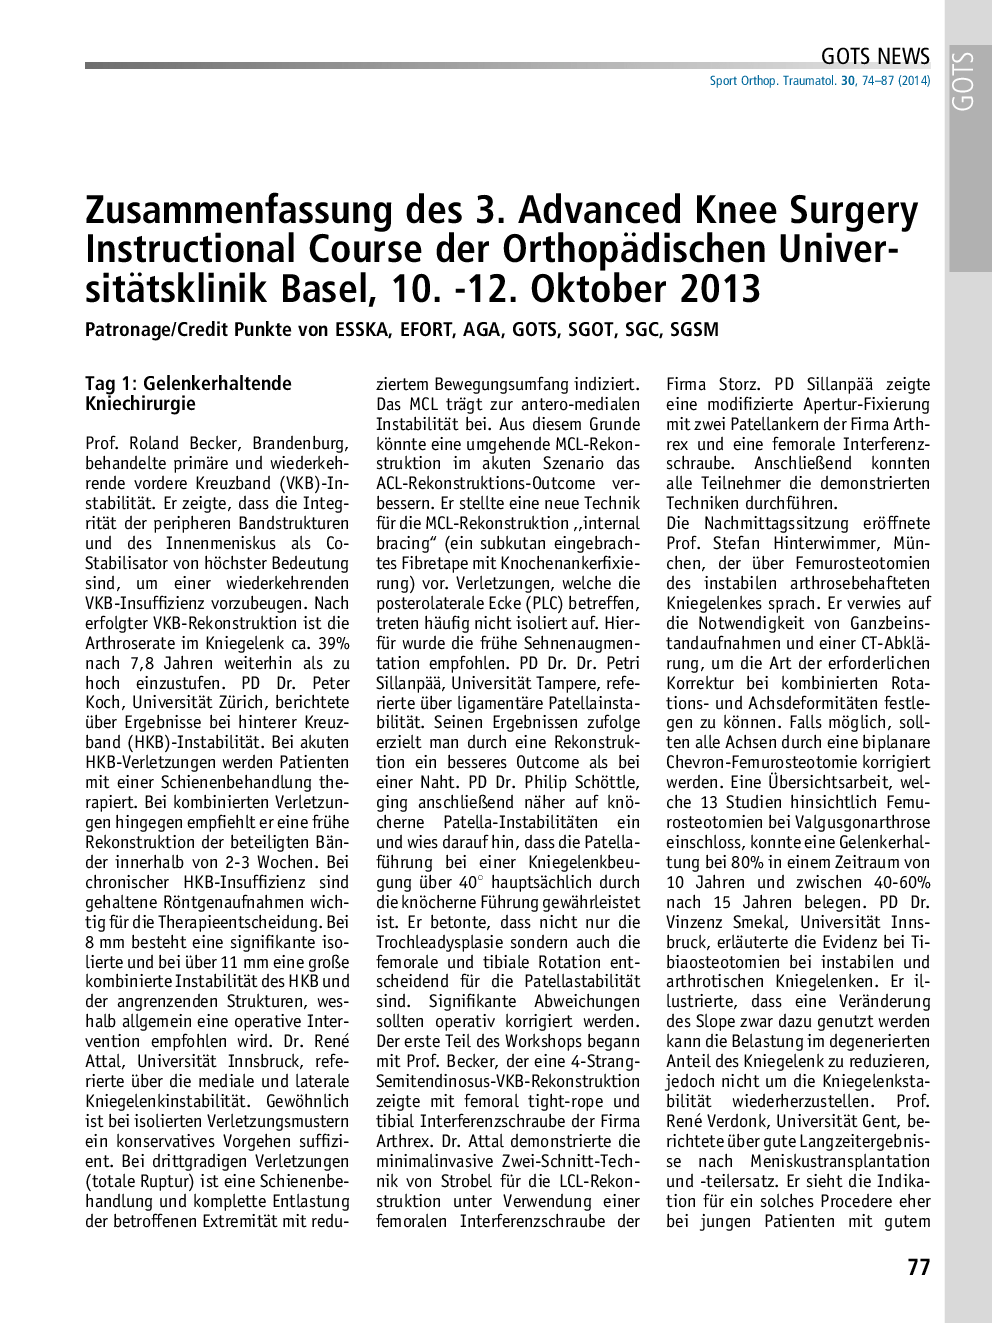 Zusammenfassung des 3. Advanced Knee Surgery Instructional Course der Orthopädischen Universitätsklinik Basel, 10. -12. Oktober 2013